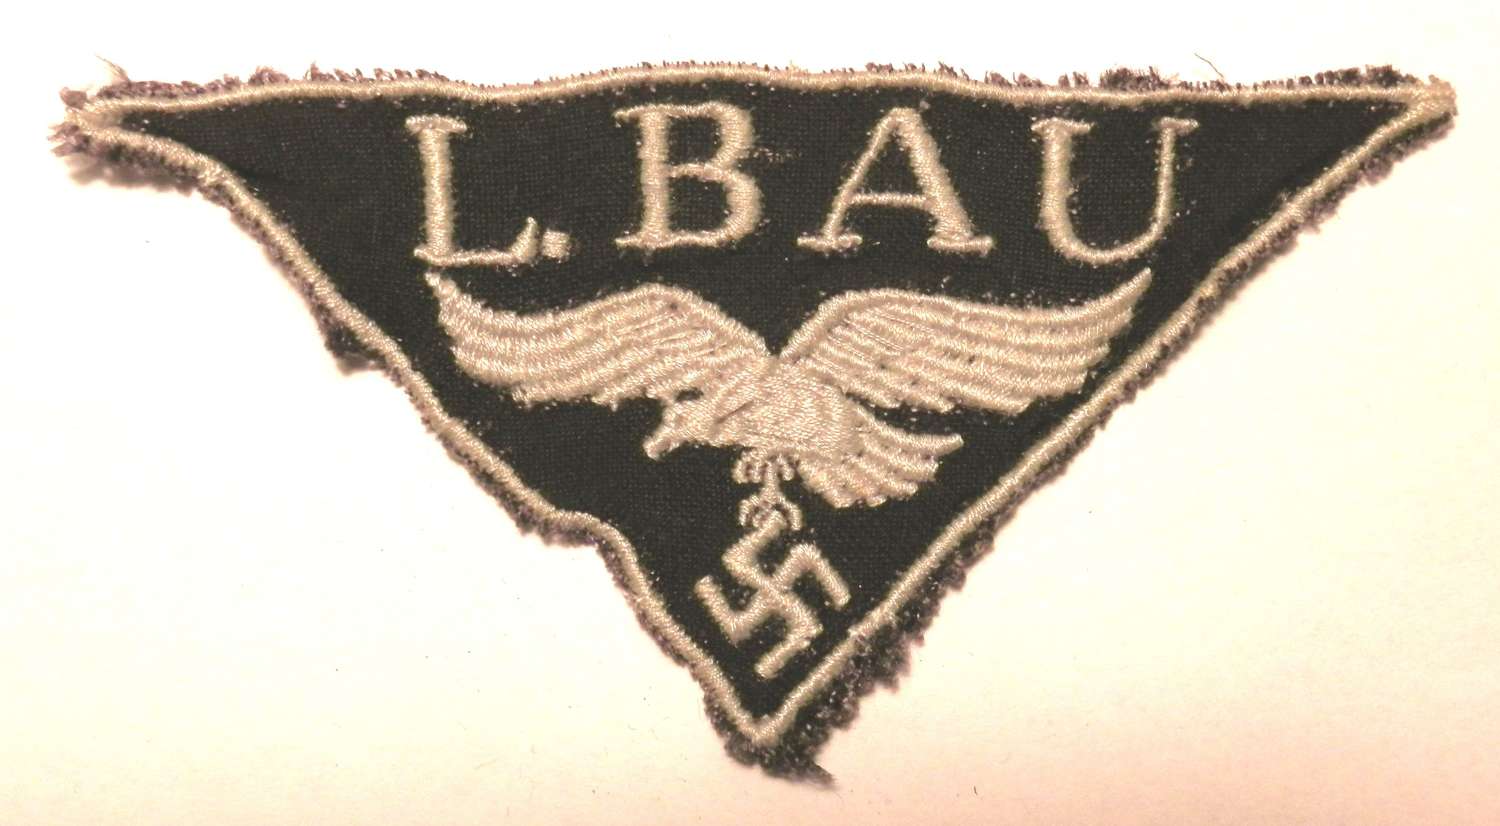 L.BAU, Luftwaffe Construction Workers Badge.